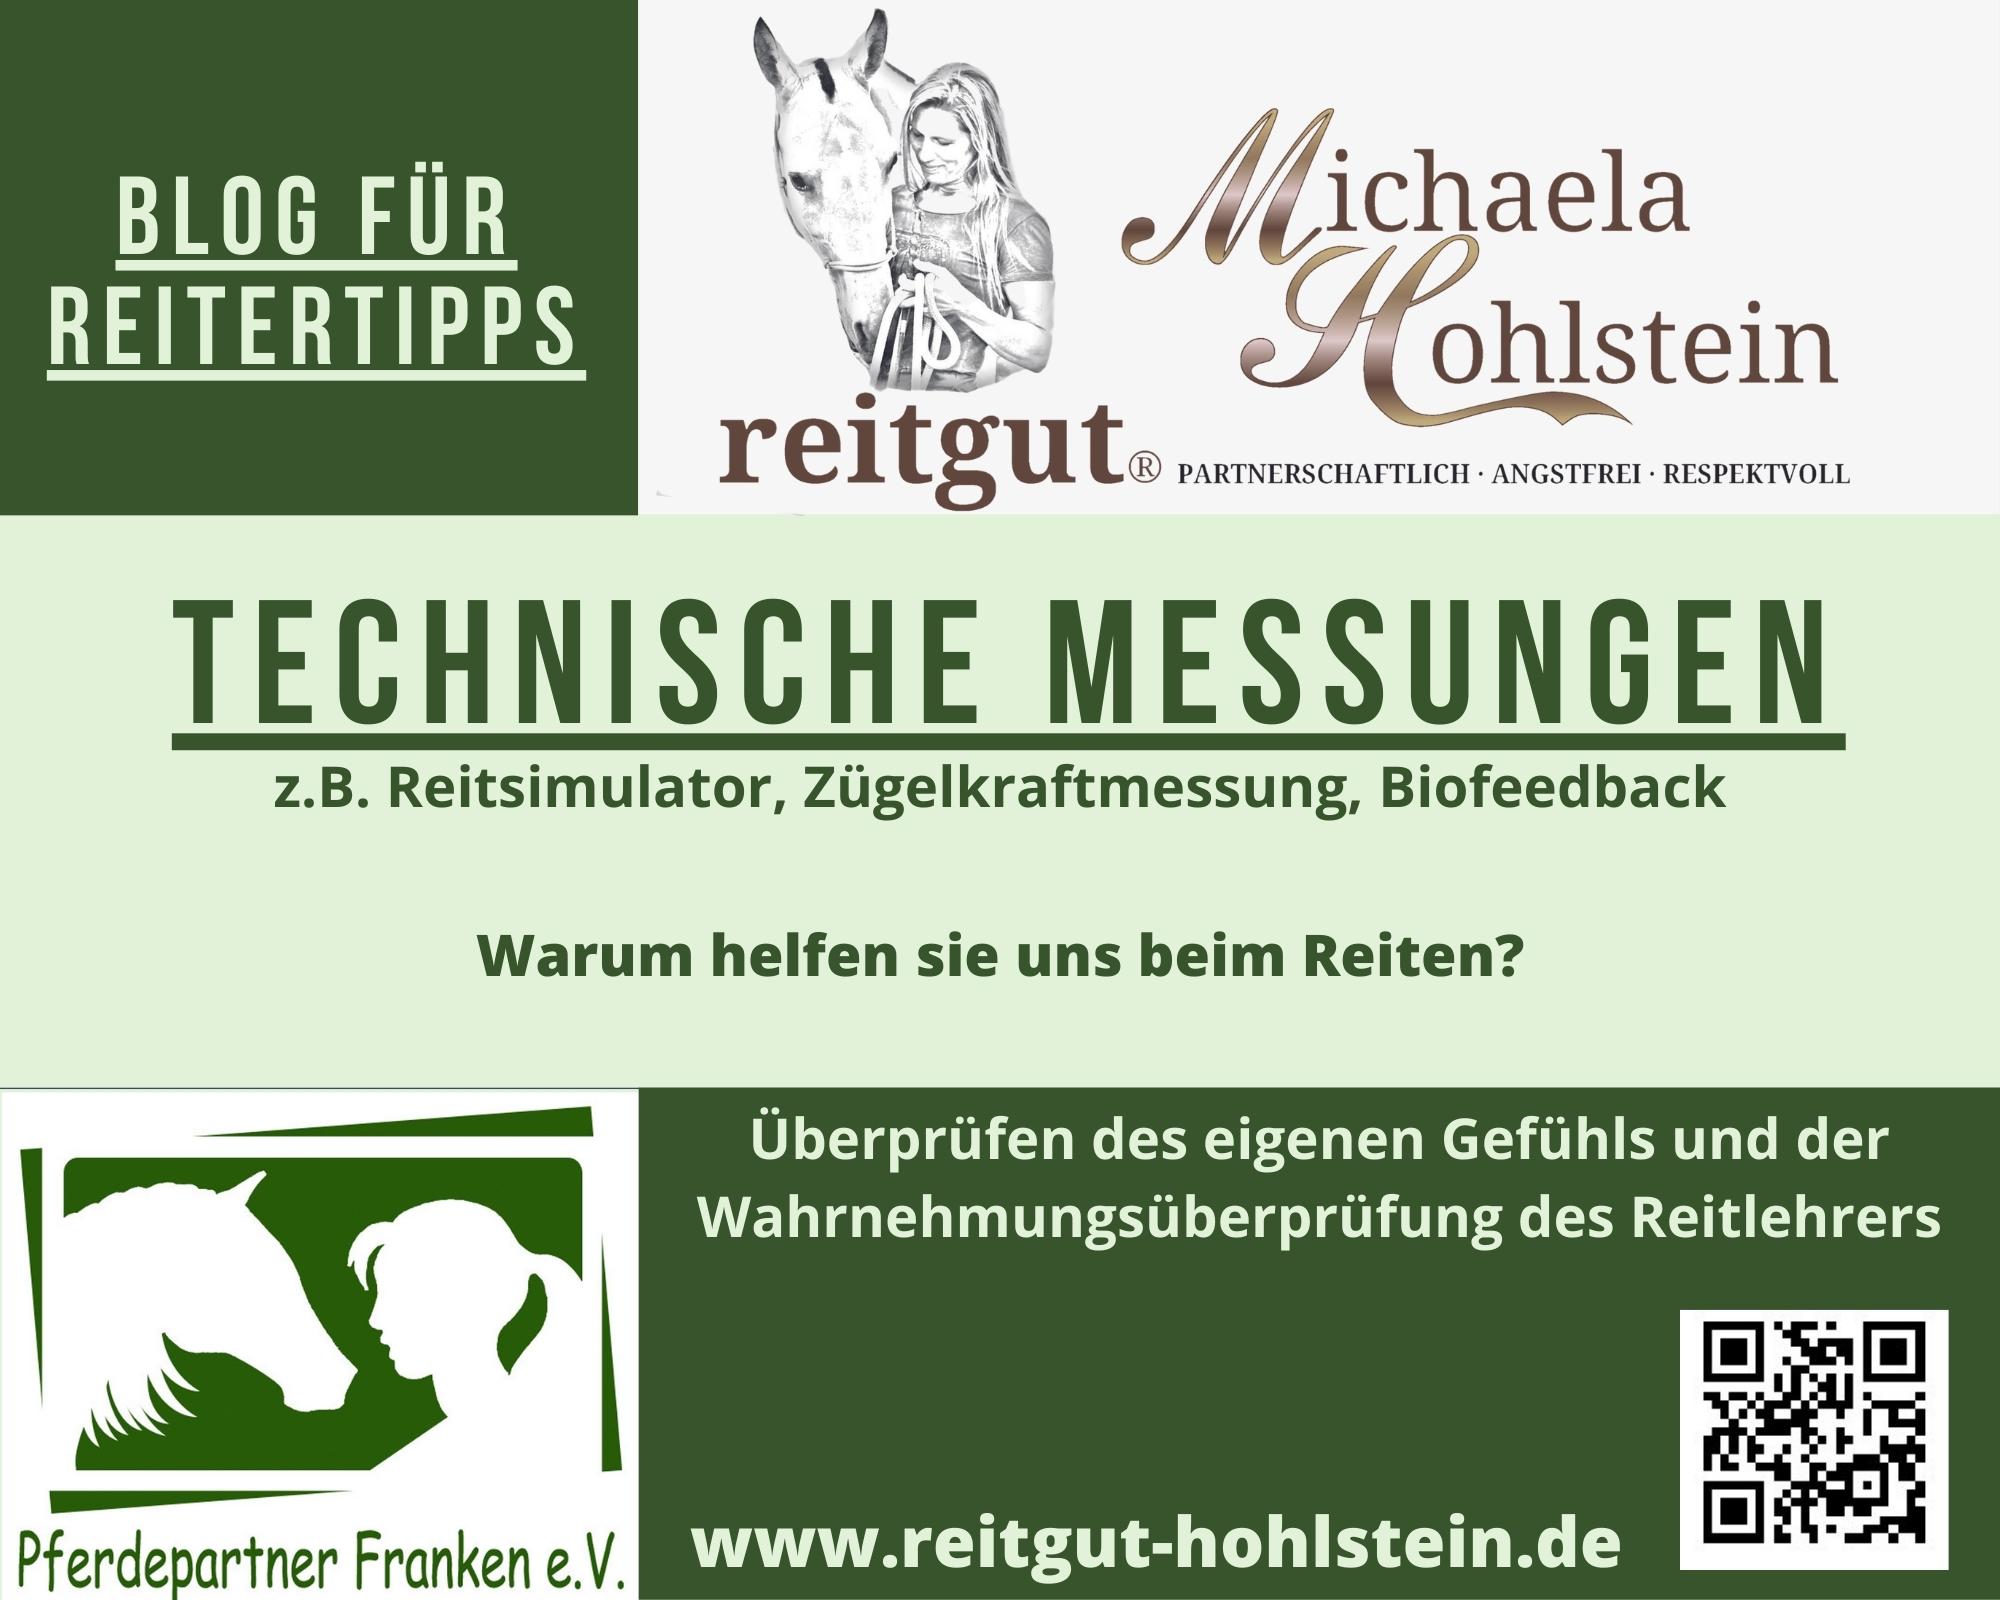 Blog Reitertipps Technische Messungen.jpg